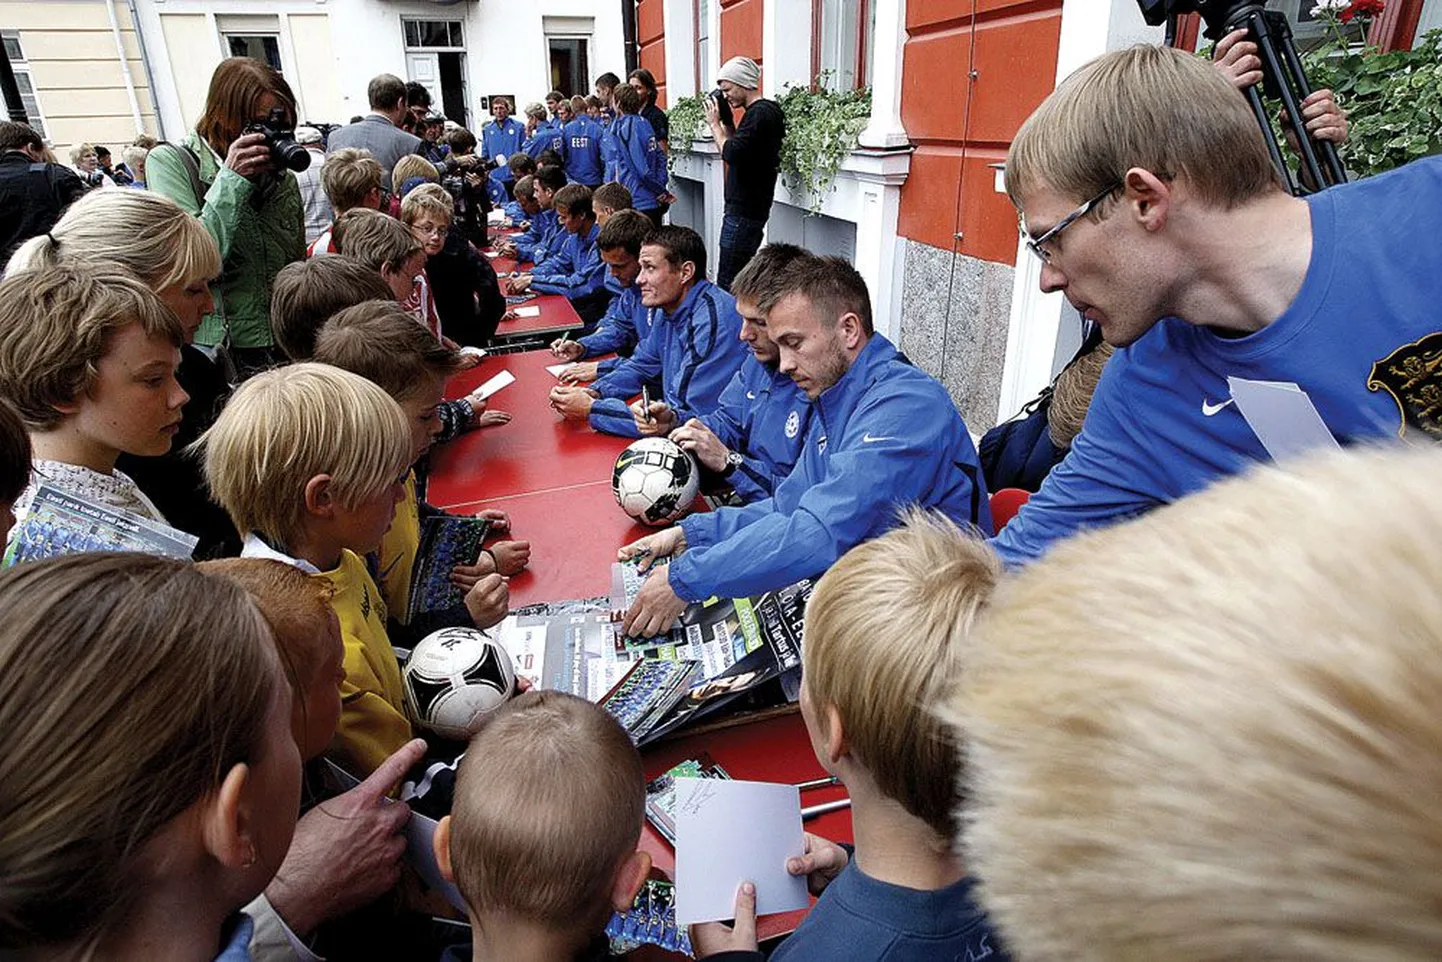 Eesti parimaid jalgpallureid oli vaatama kogunenud igas vanuses jalgpallisõpru. Väiksemad huvilised ei pidanud paljuks ka natuke aega järjekorras seista, et lemmikuid päris lähedalt näha ja siis koondise pildile nende allkirju küsida.